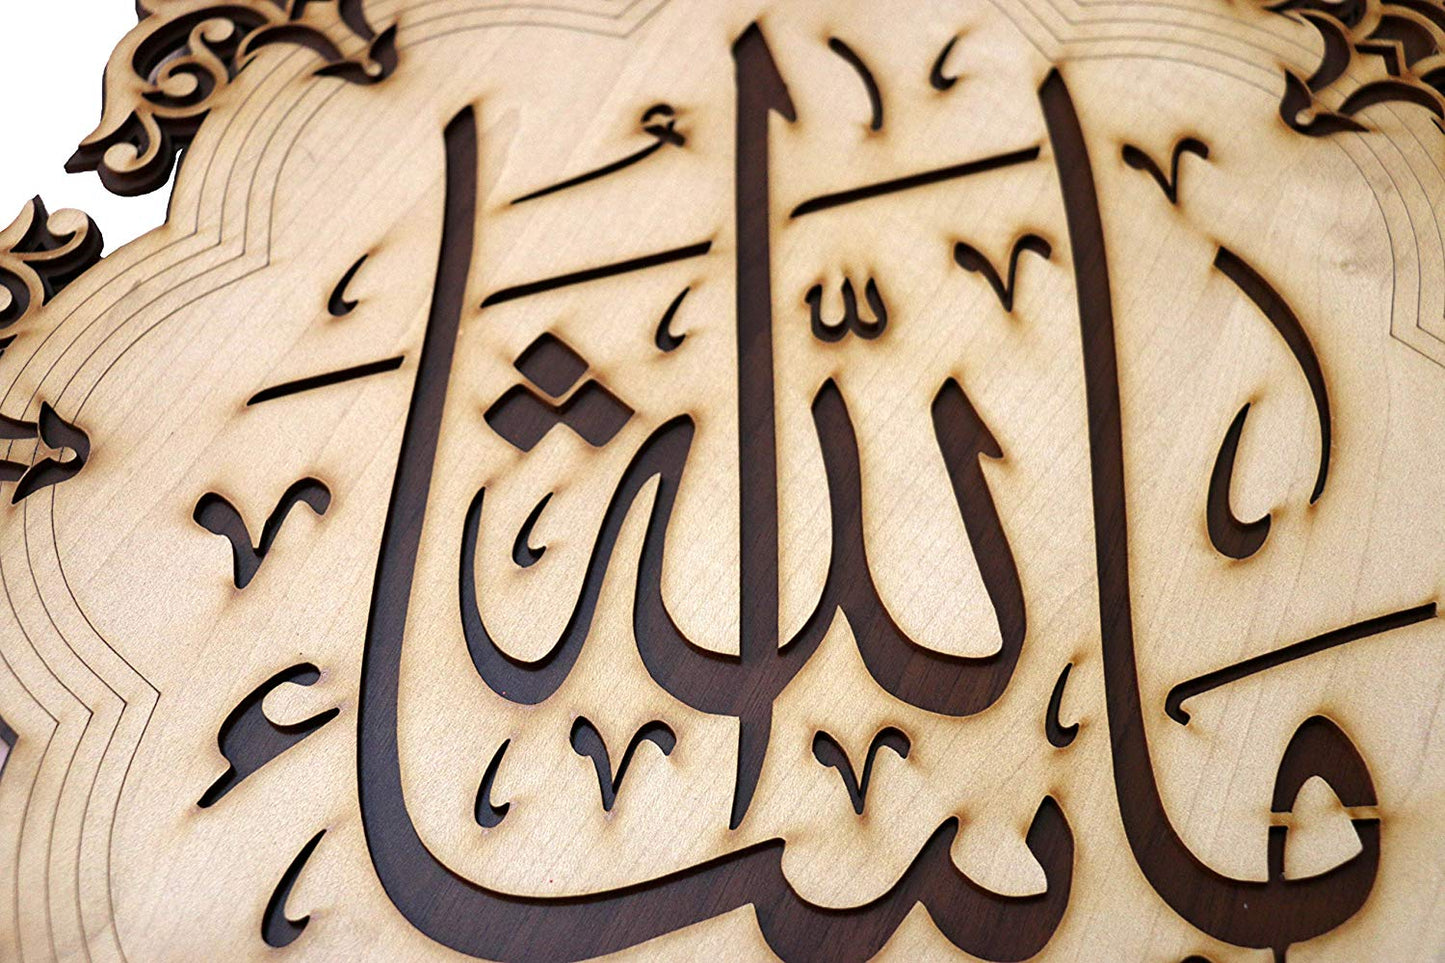 Islamic Wall Frame Wooden Home DÉCOR Wall Hanging KALMA E PAK “laa ilaahah illa allaah muhammadun rasool ullaah”| MASHALLAH| HAZA MIN FAZLI RABBI 18.5 INCH by 18.5 INCHES